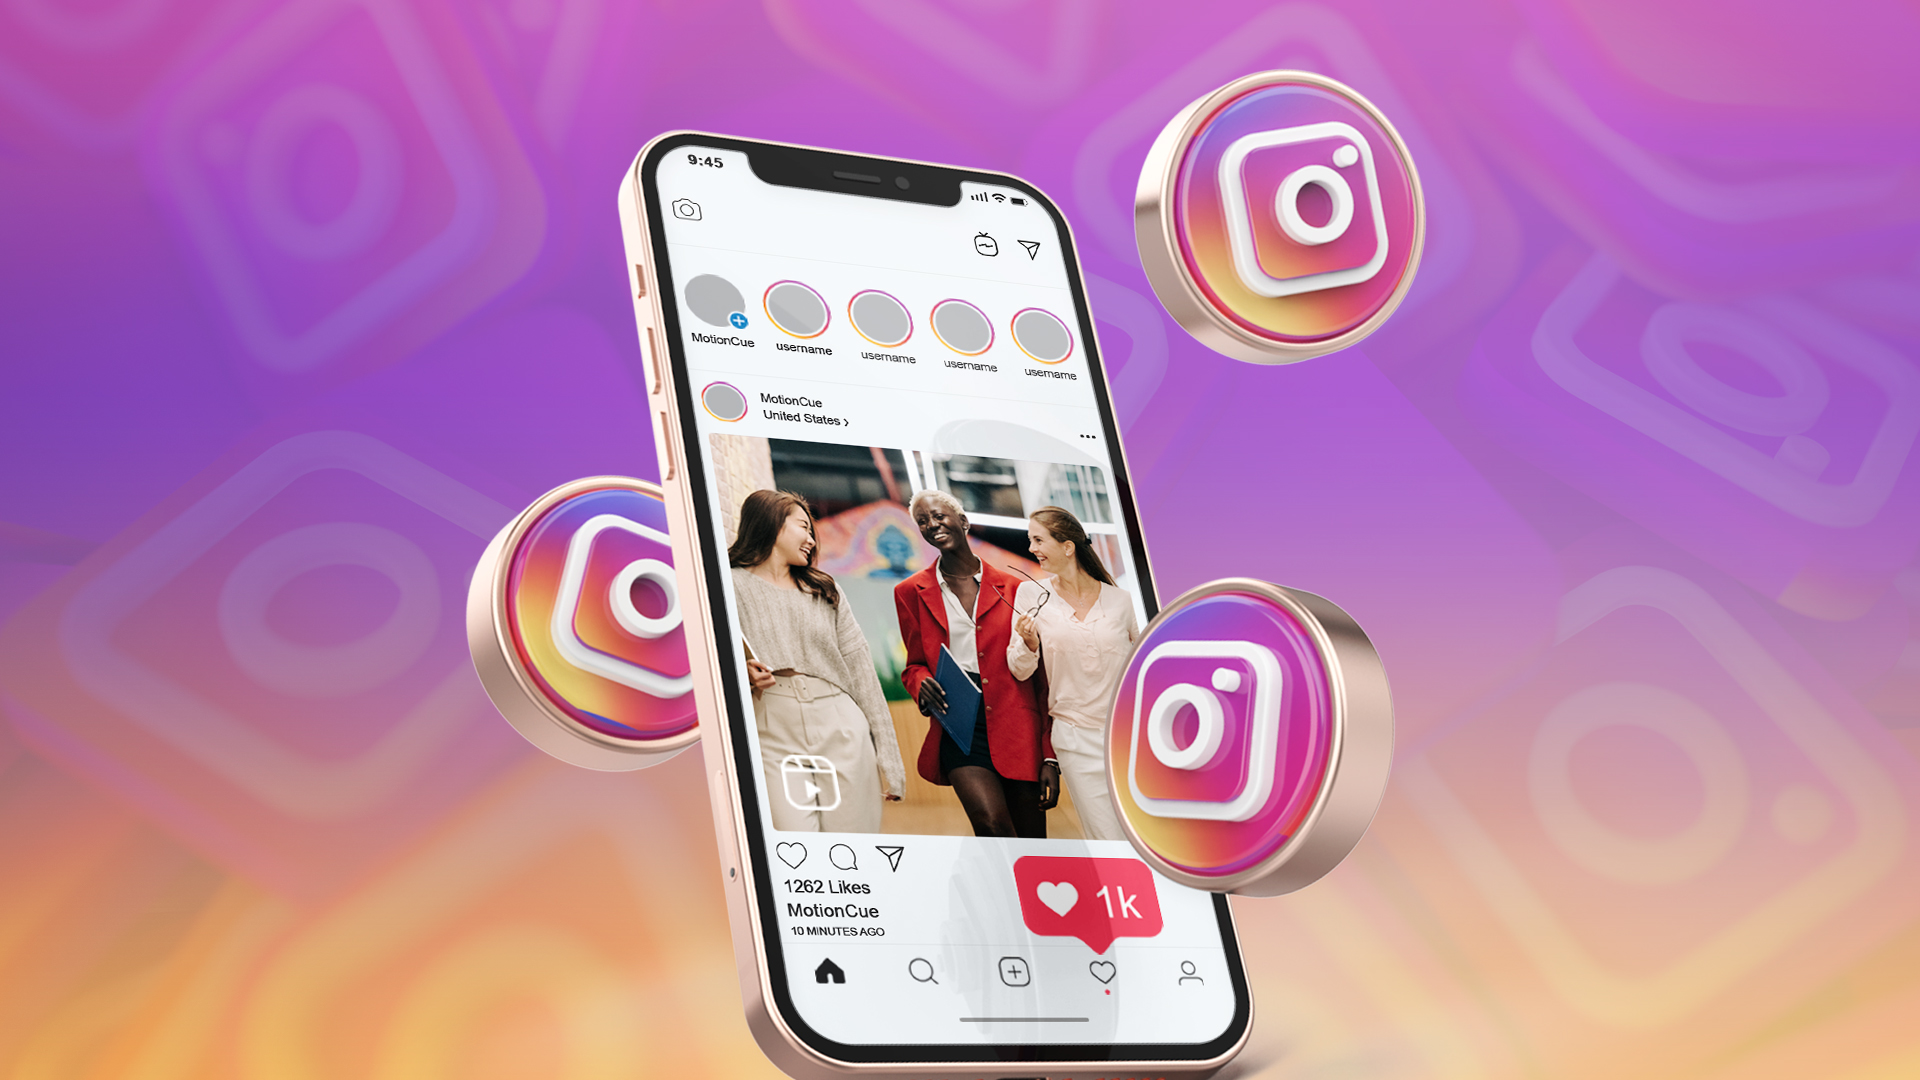 Cara Download Video Instagram Tanpa Aplikasi Tambahan, Gampang Banget Tinggal Copas